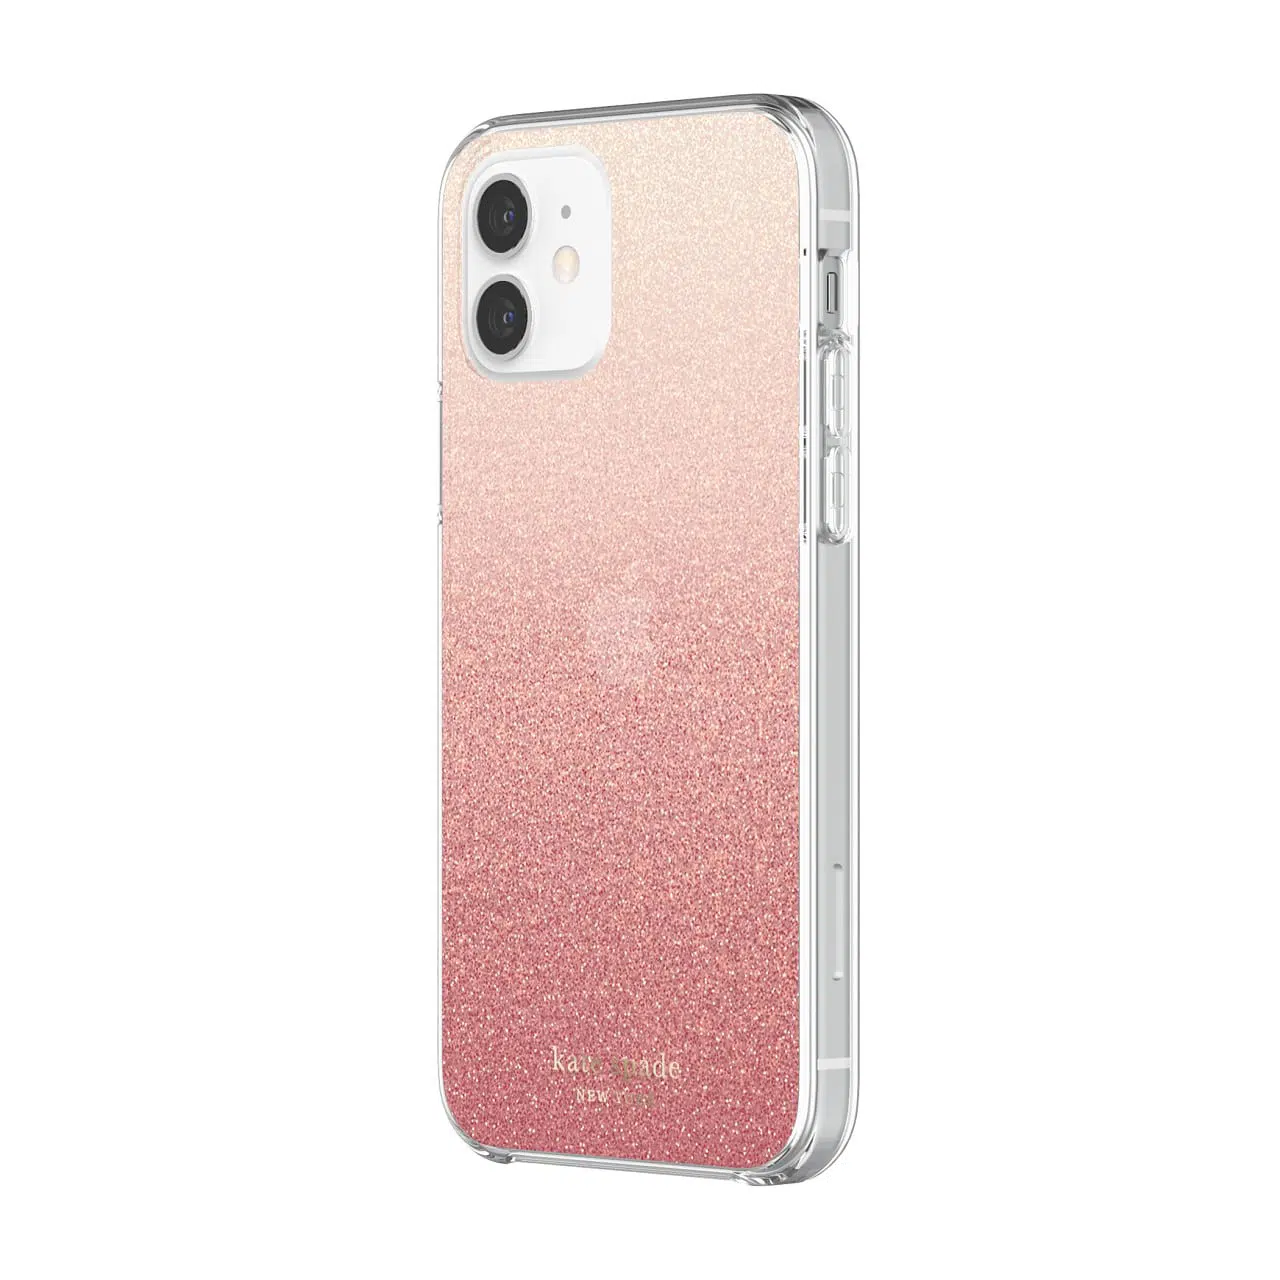 เคส Kate Spade New York รุ่น Protective Hardshell Case - iPhone 12 Mini - Glitter Ombre Sunset Pink